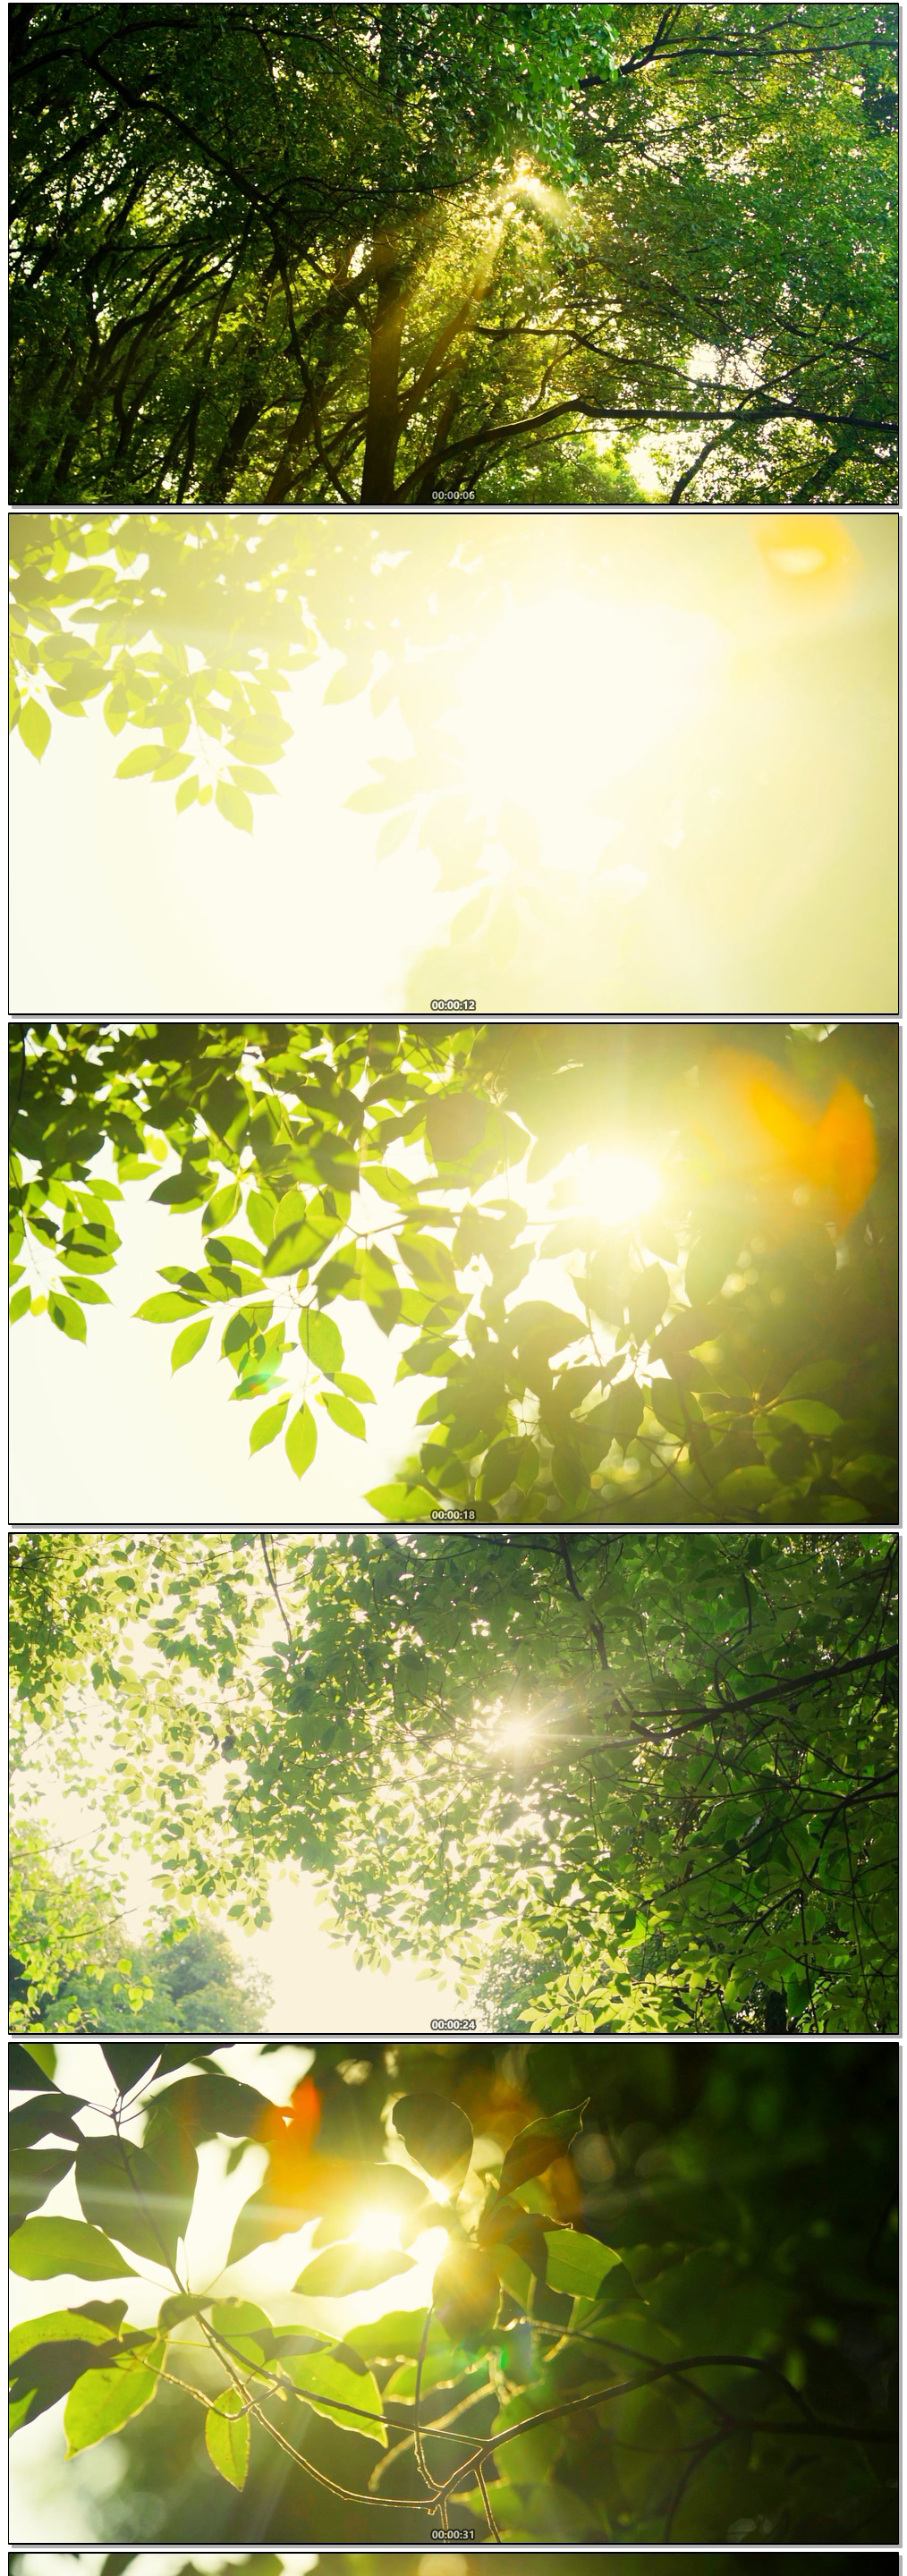 阳光照射森林丁达尔光线唯美逆光写意空镜